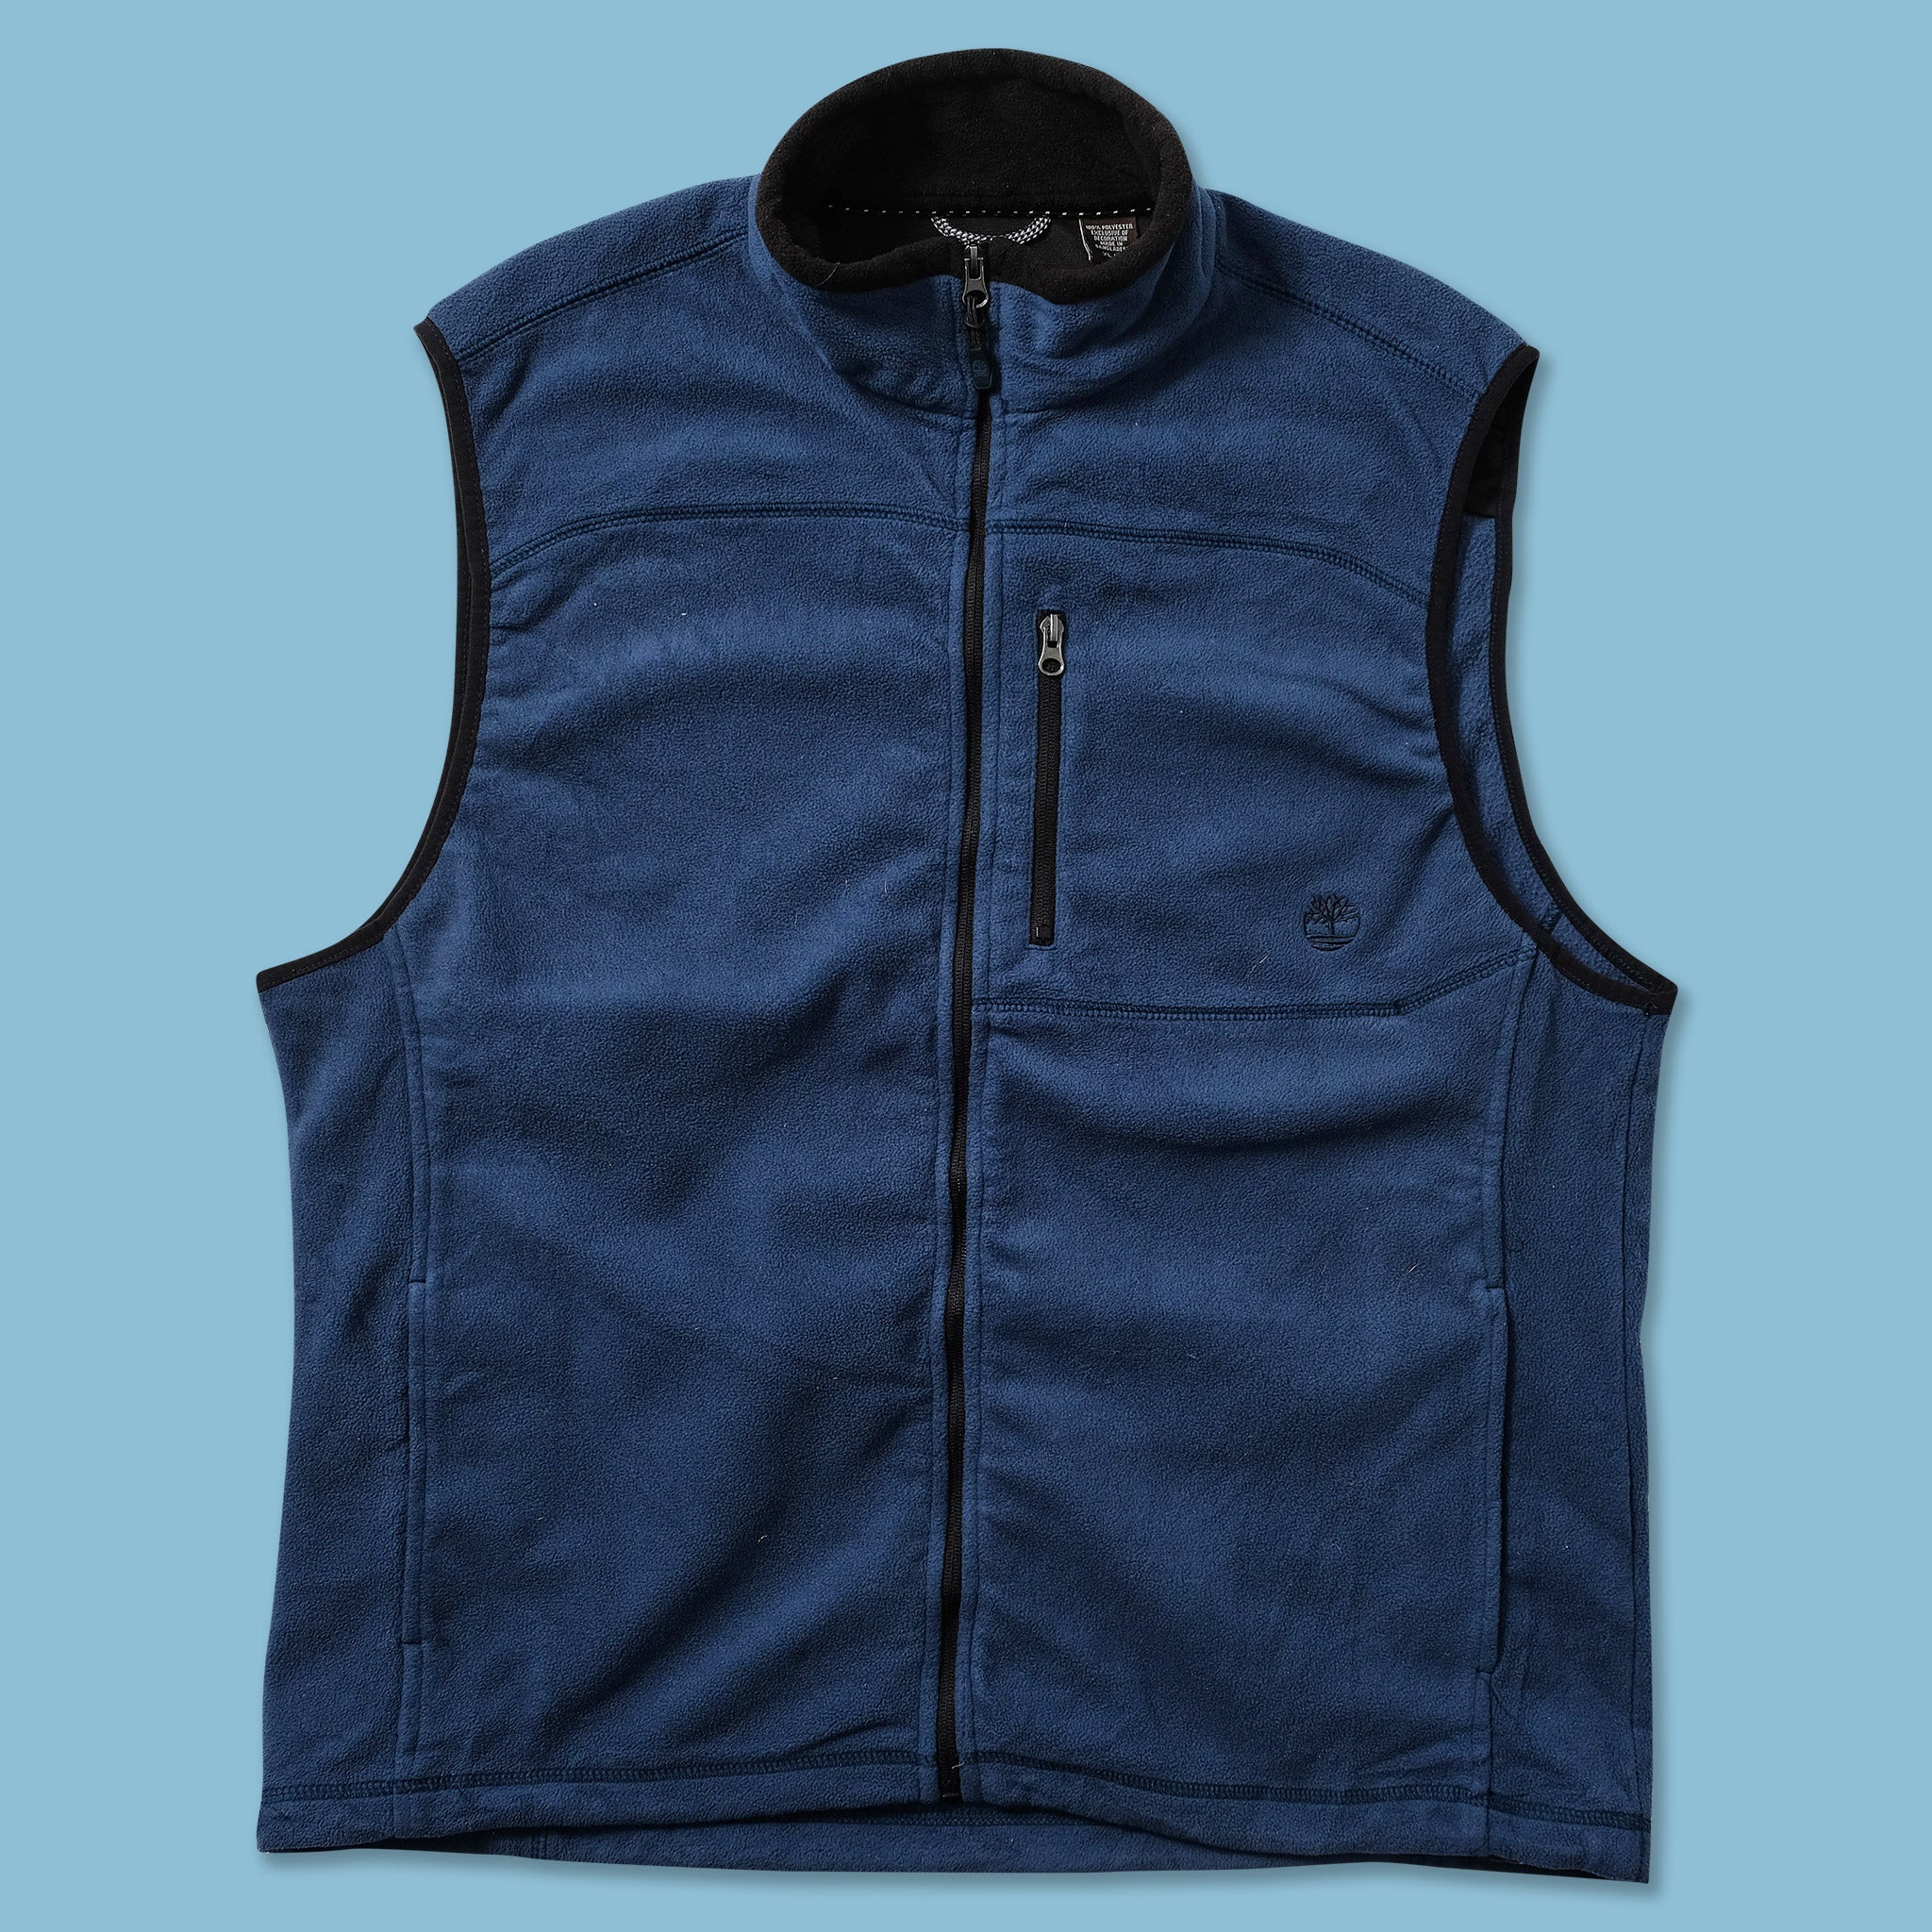 Men's Mountain Fleece Vest, Ll Bean Fleece Vest